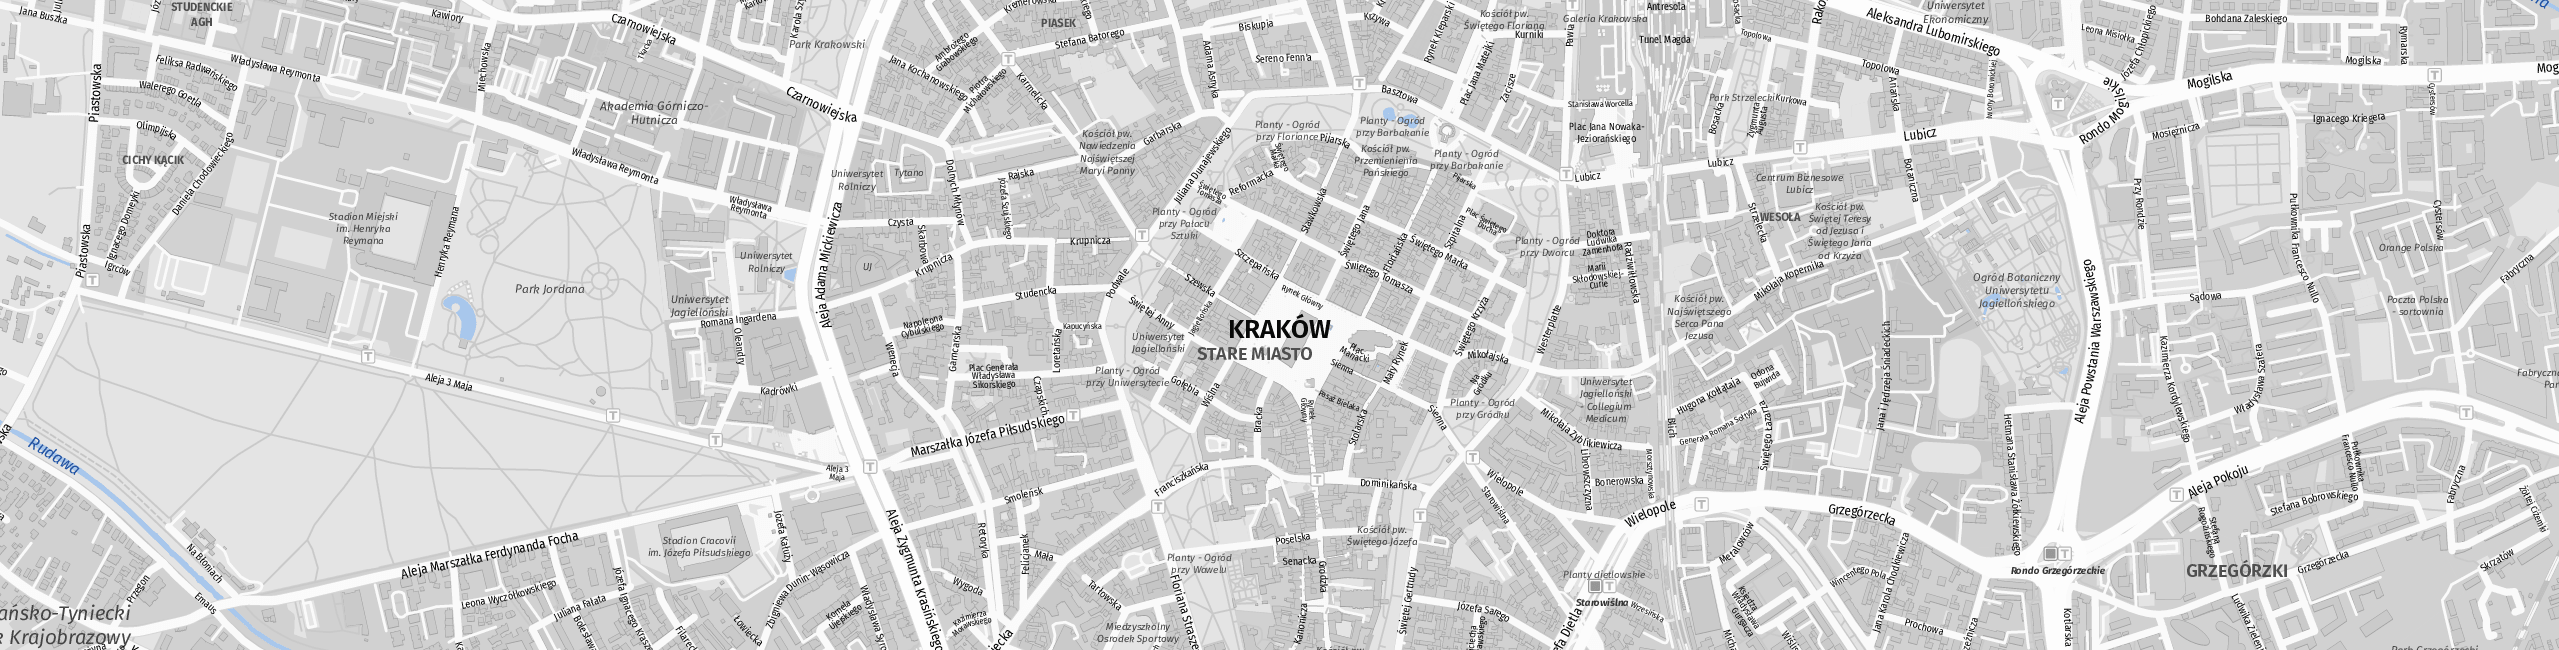 Stadtplan Krakau zum Downloaden.